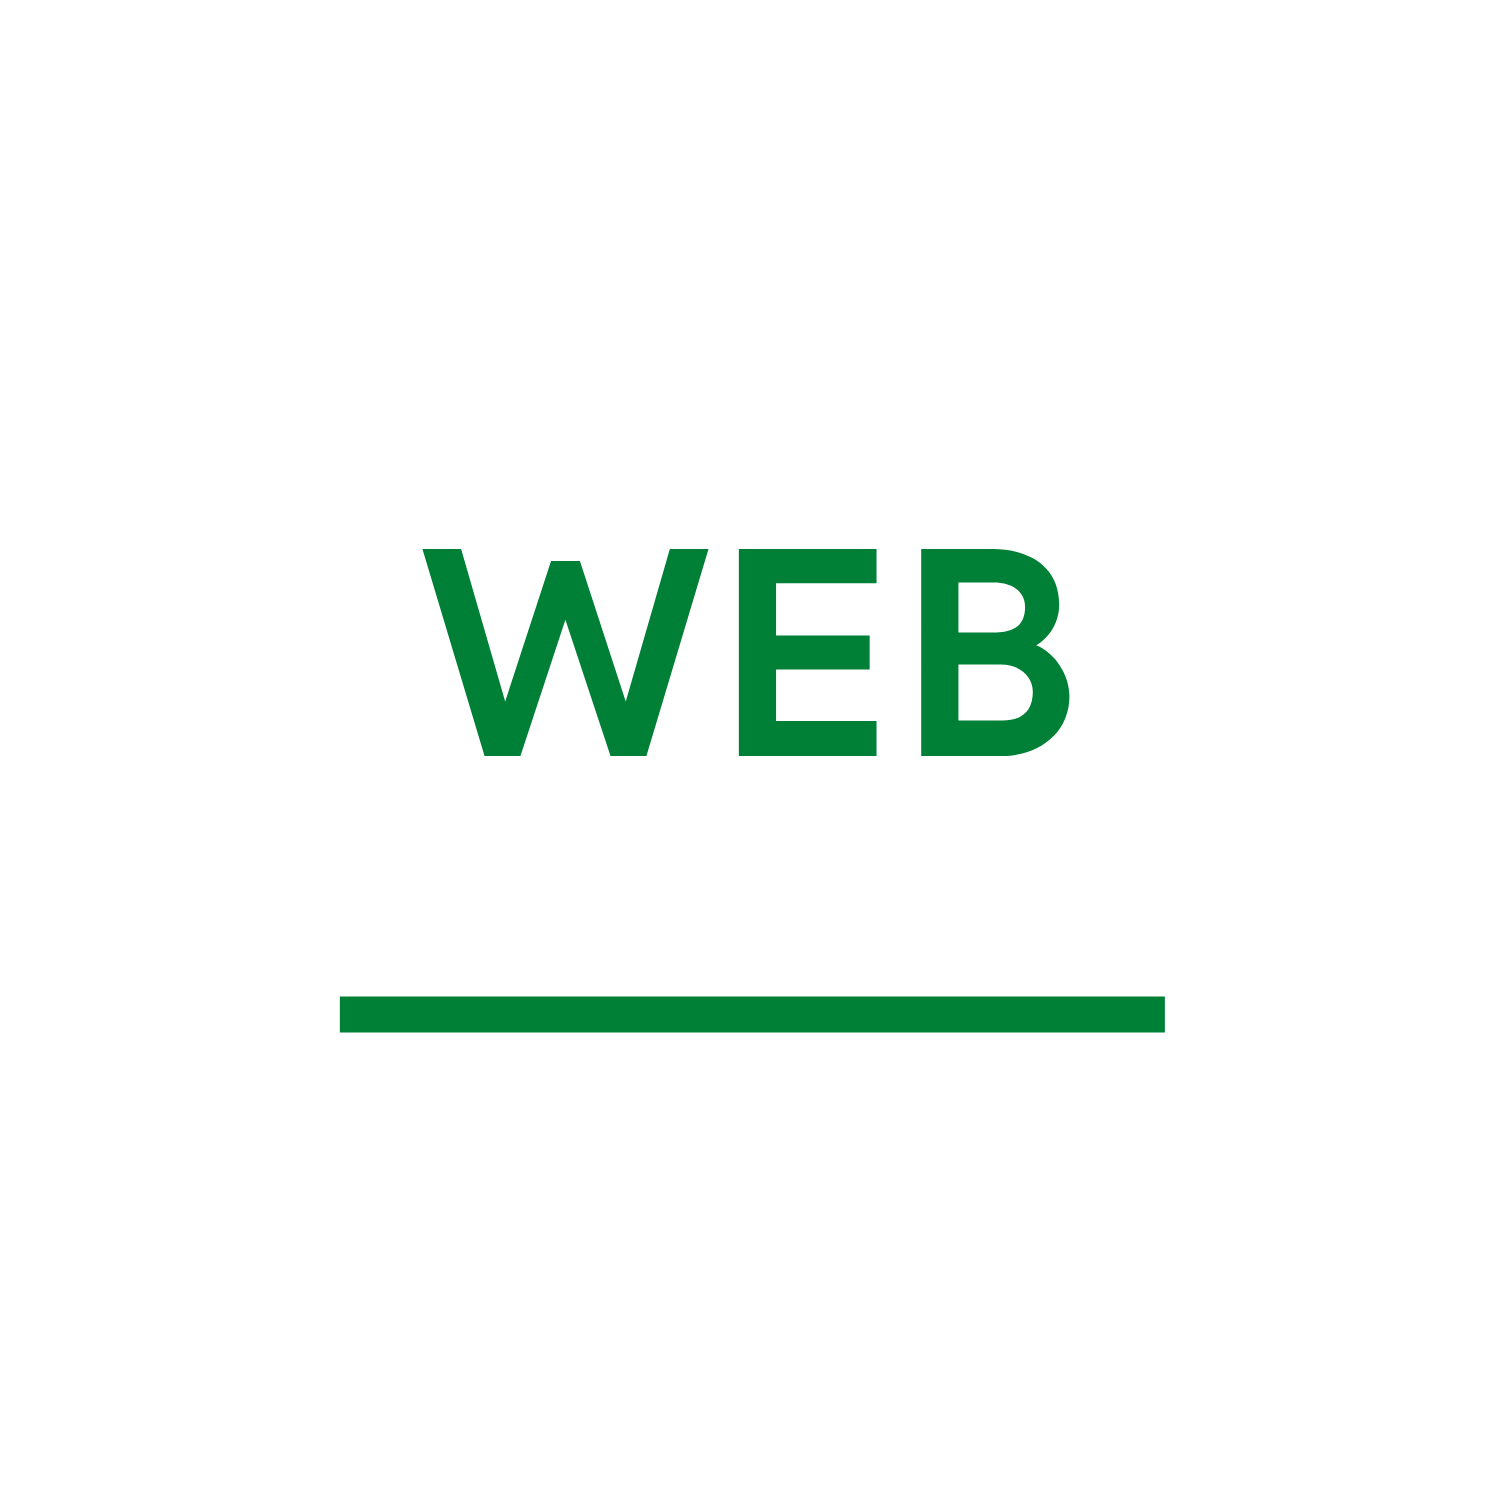 WebButze by Felix Speck